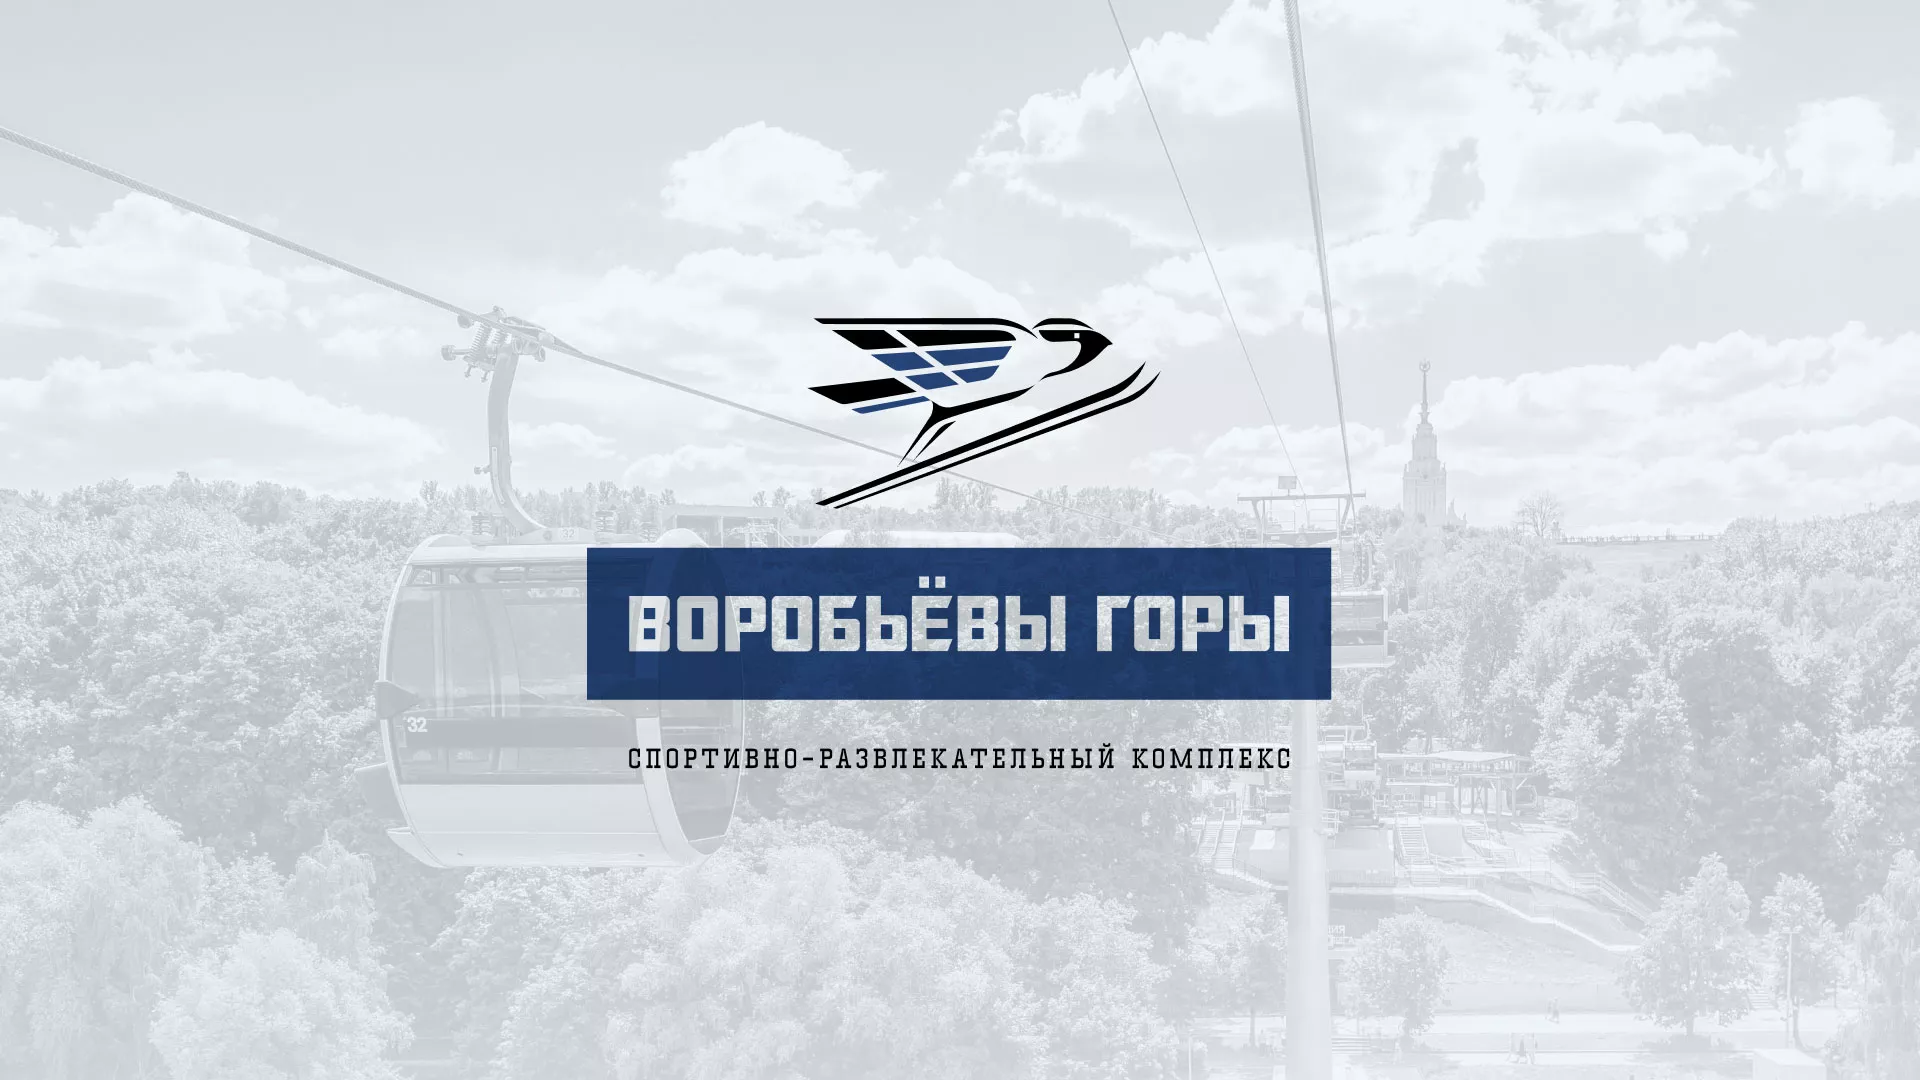 Разработка сайта в Невинномысске для спортивно-развлекательного комплекса «Воробьёвы горы»